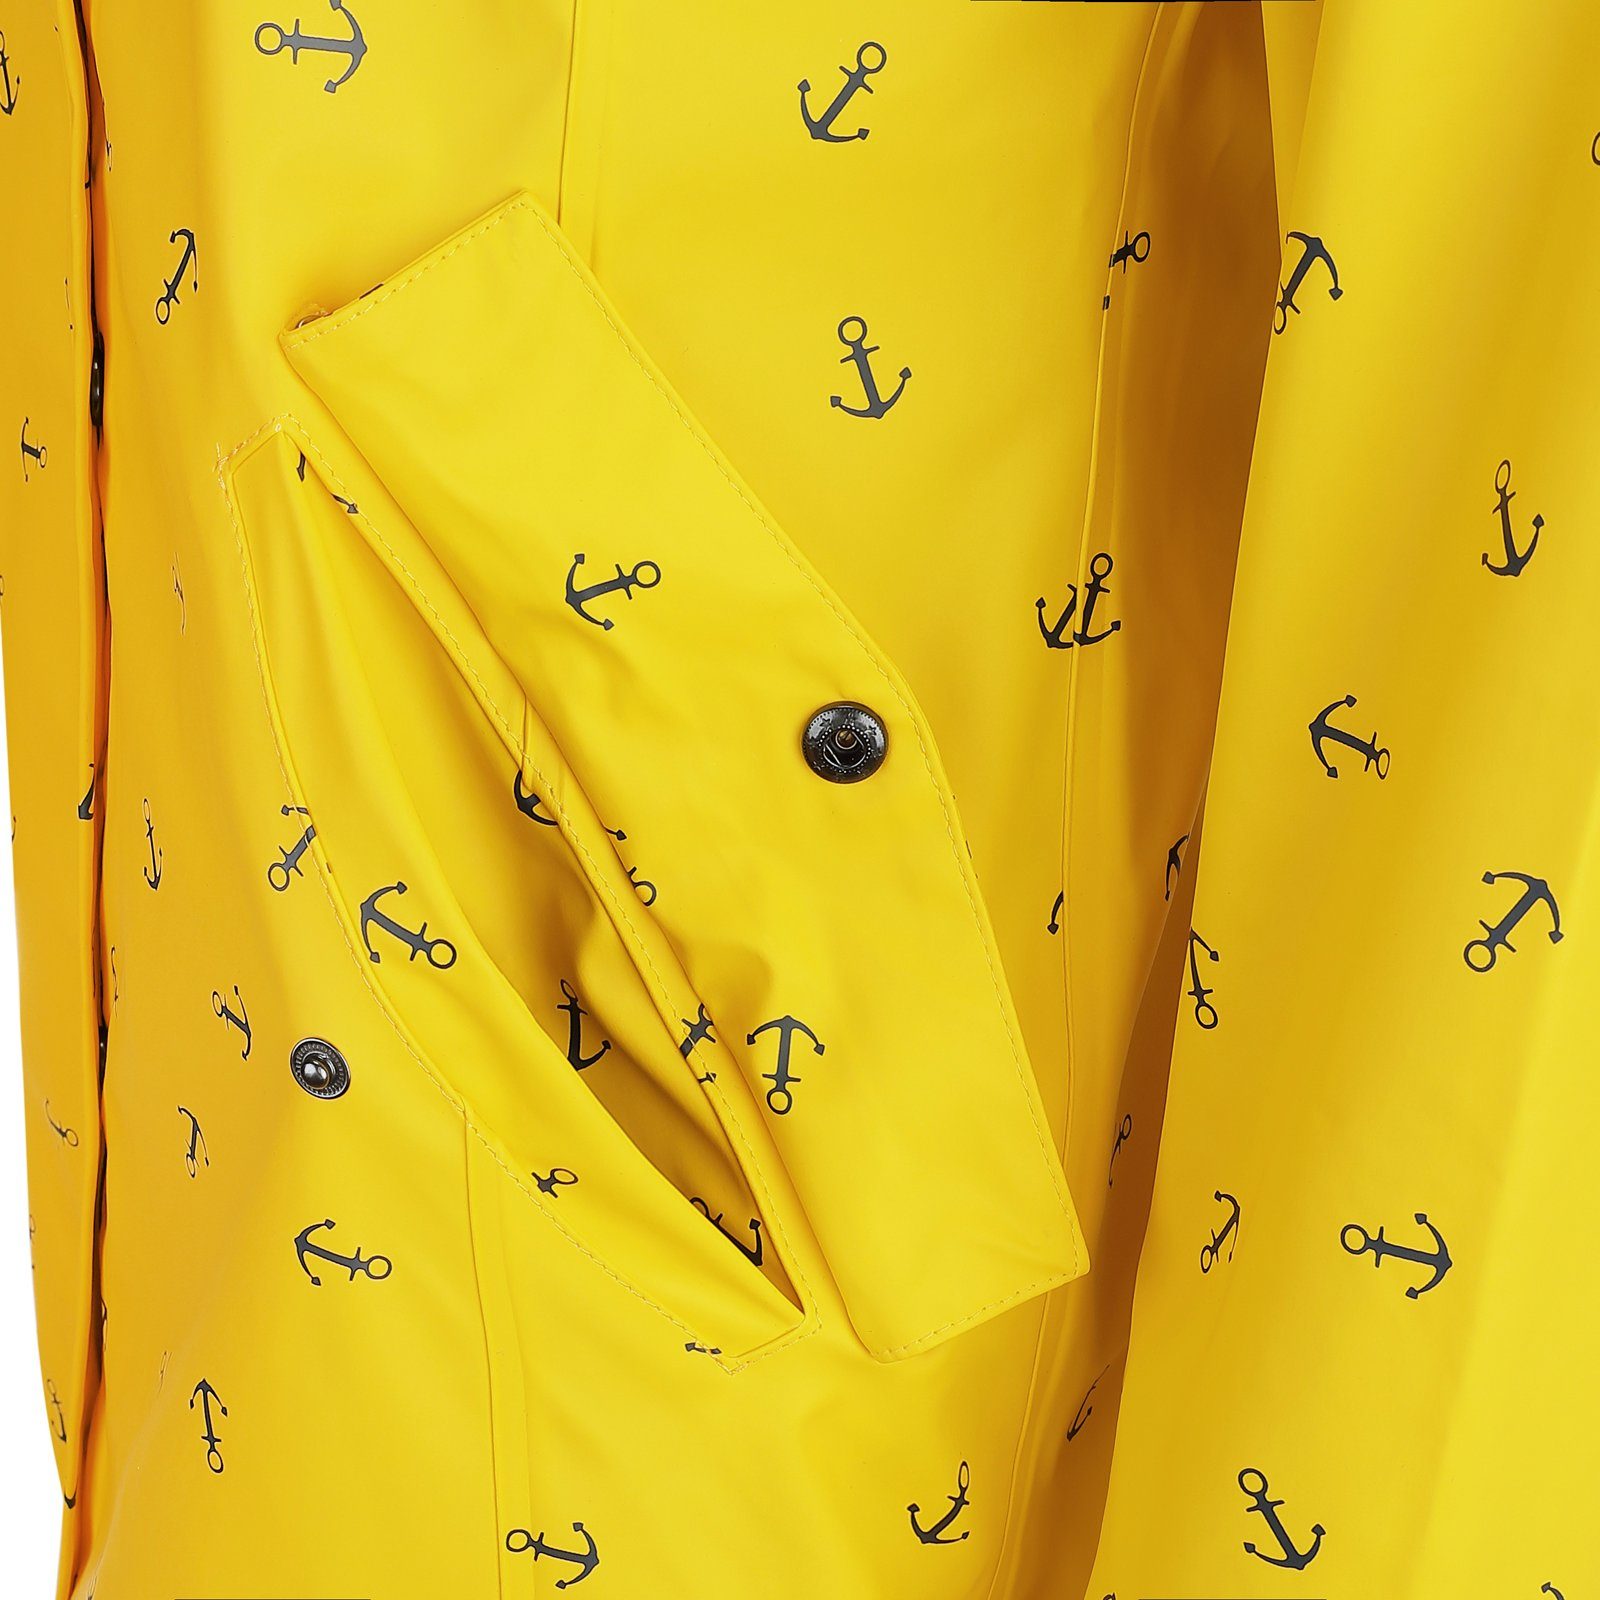 Damen Regenmantel wasserdicht Cuxhaven - Dry mit Anker-Print Kapuze Fashion Jacke gelb Regenjacke